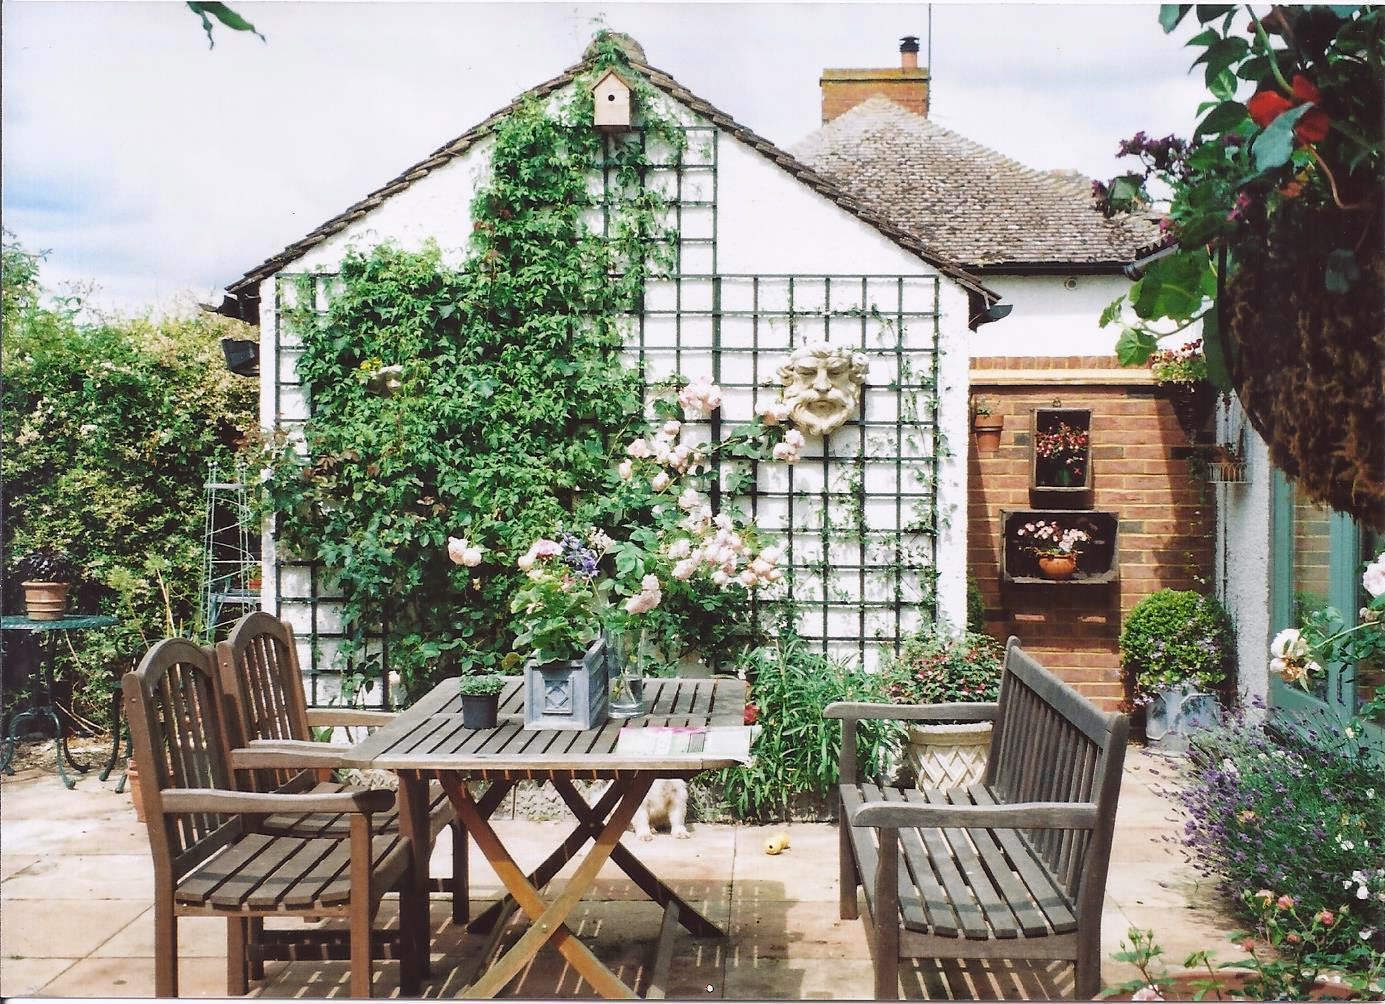 The English garden design - patio furniture